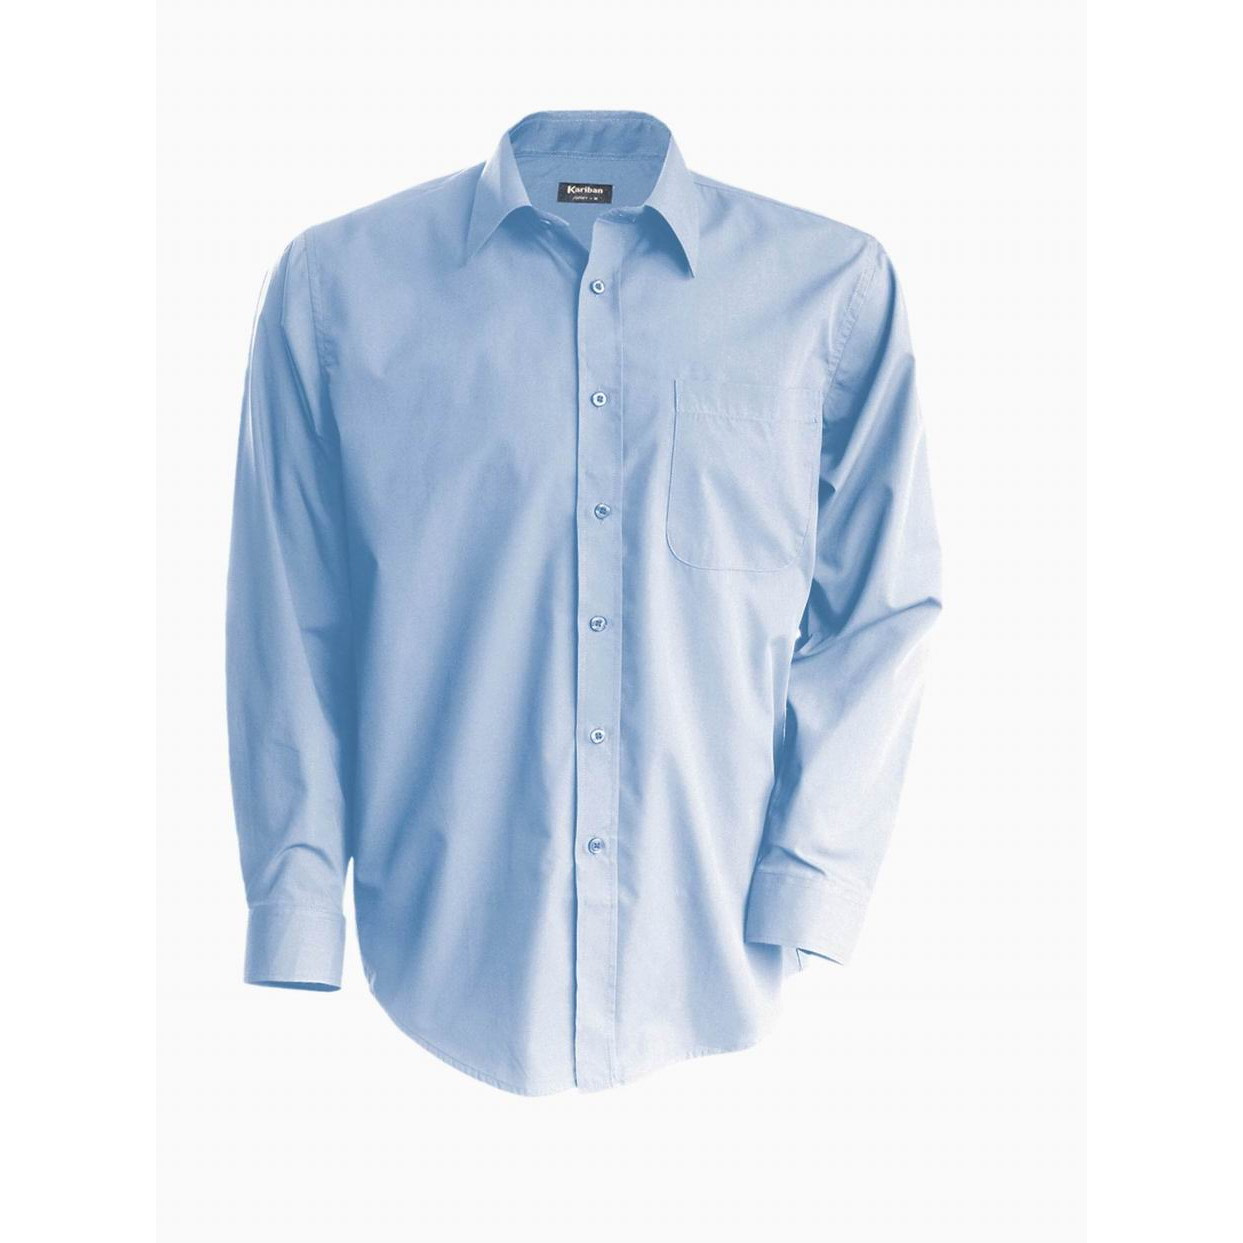 Pánská košile Kariban dlouhý rukáv v nežehlivé úpravě - modrá, XXL